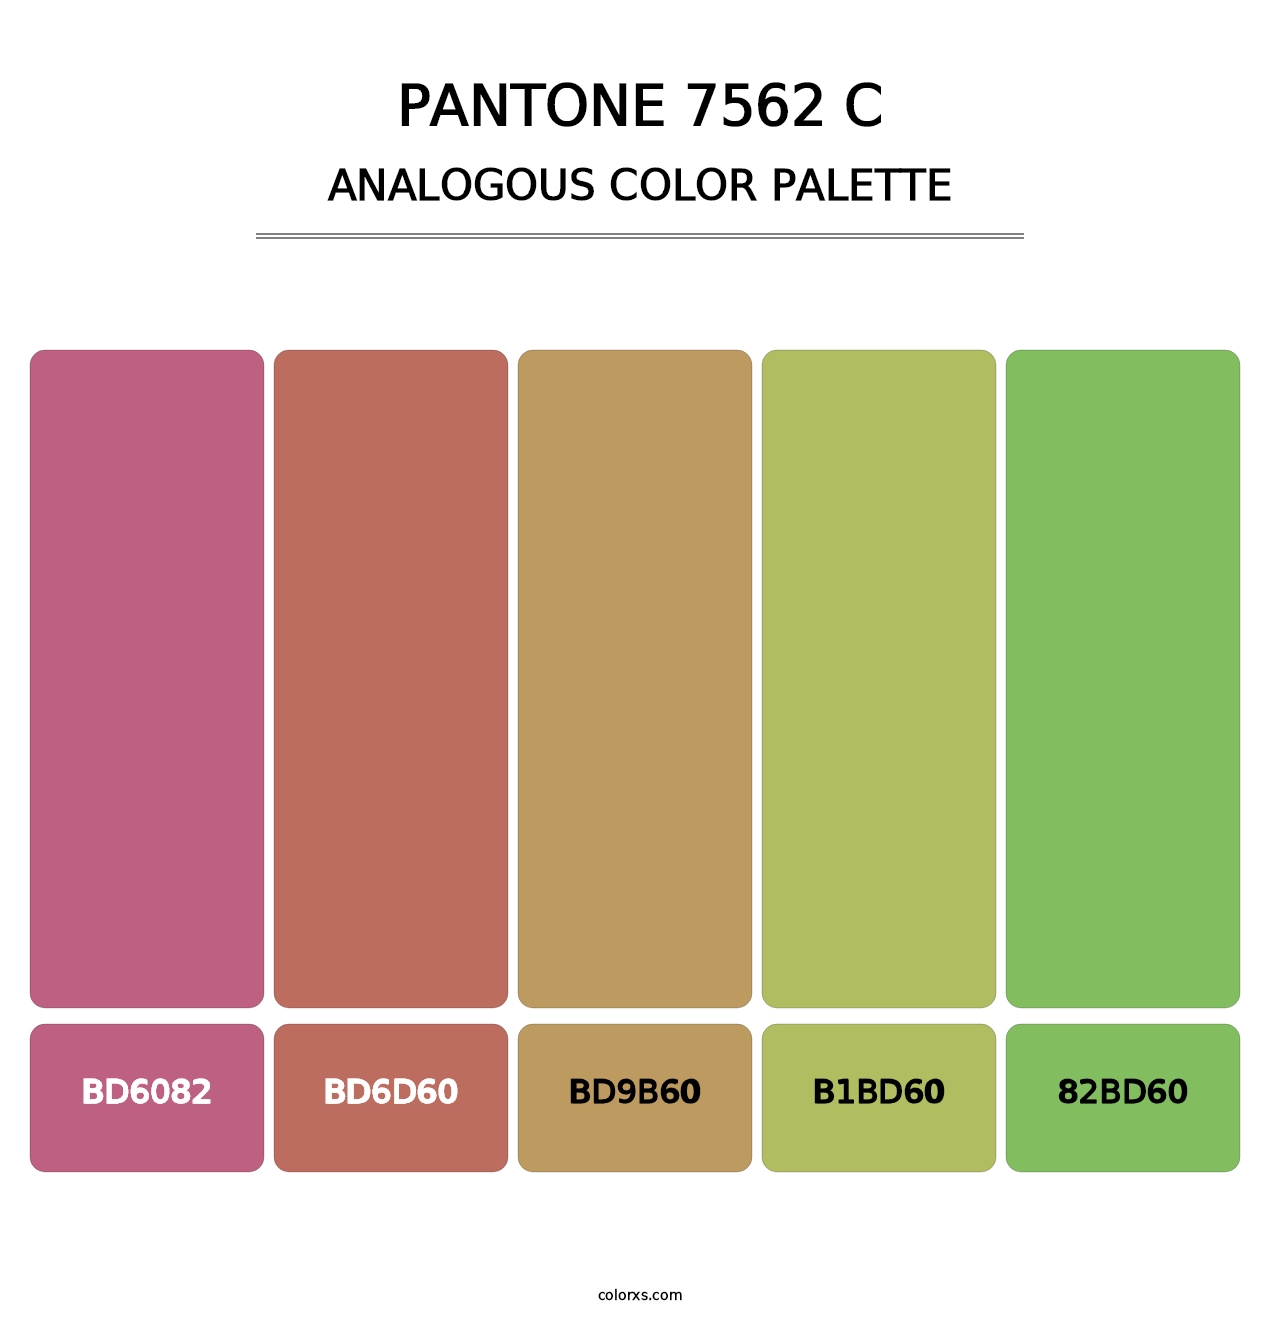 PANTONE 7562 C - Analogous Color Palette